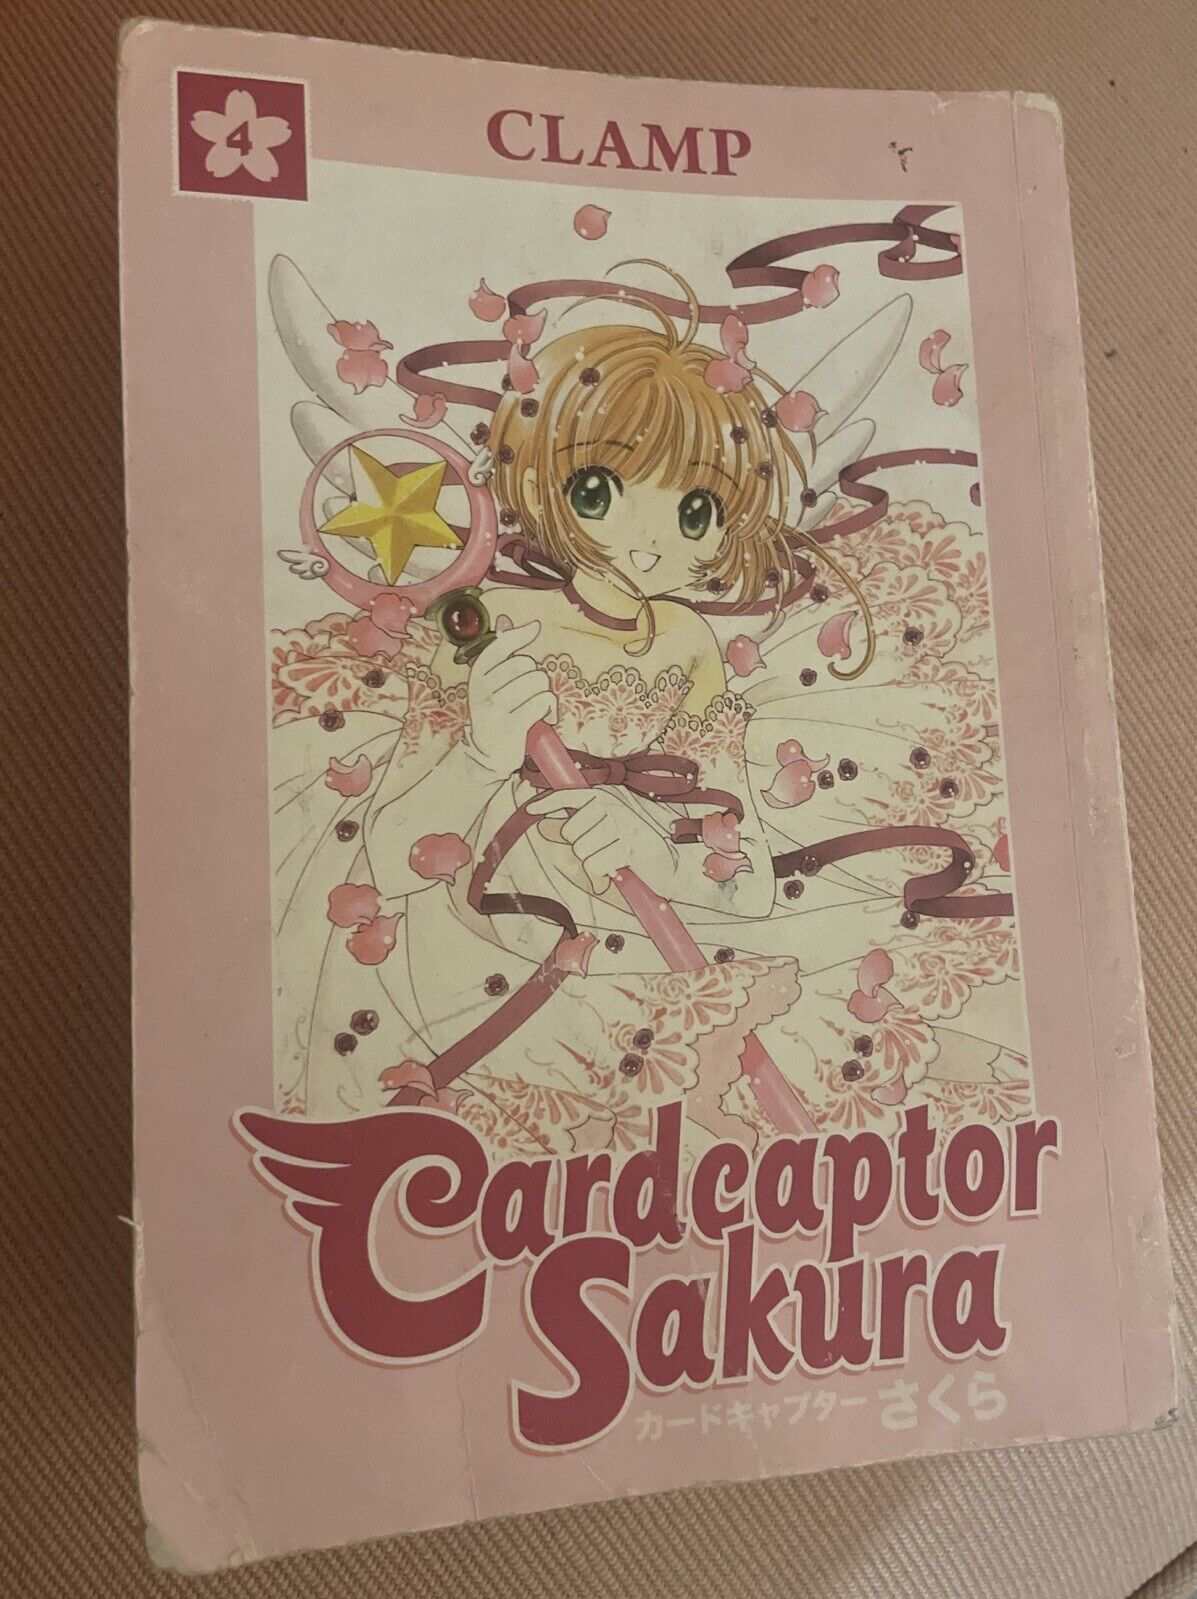 Cardcaptor Sakura #4 (Dark Horse Comics)